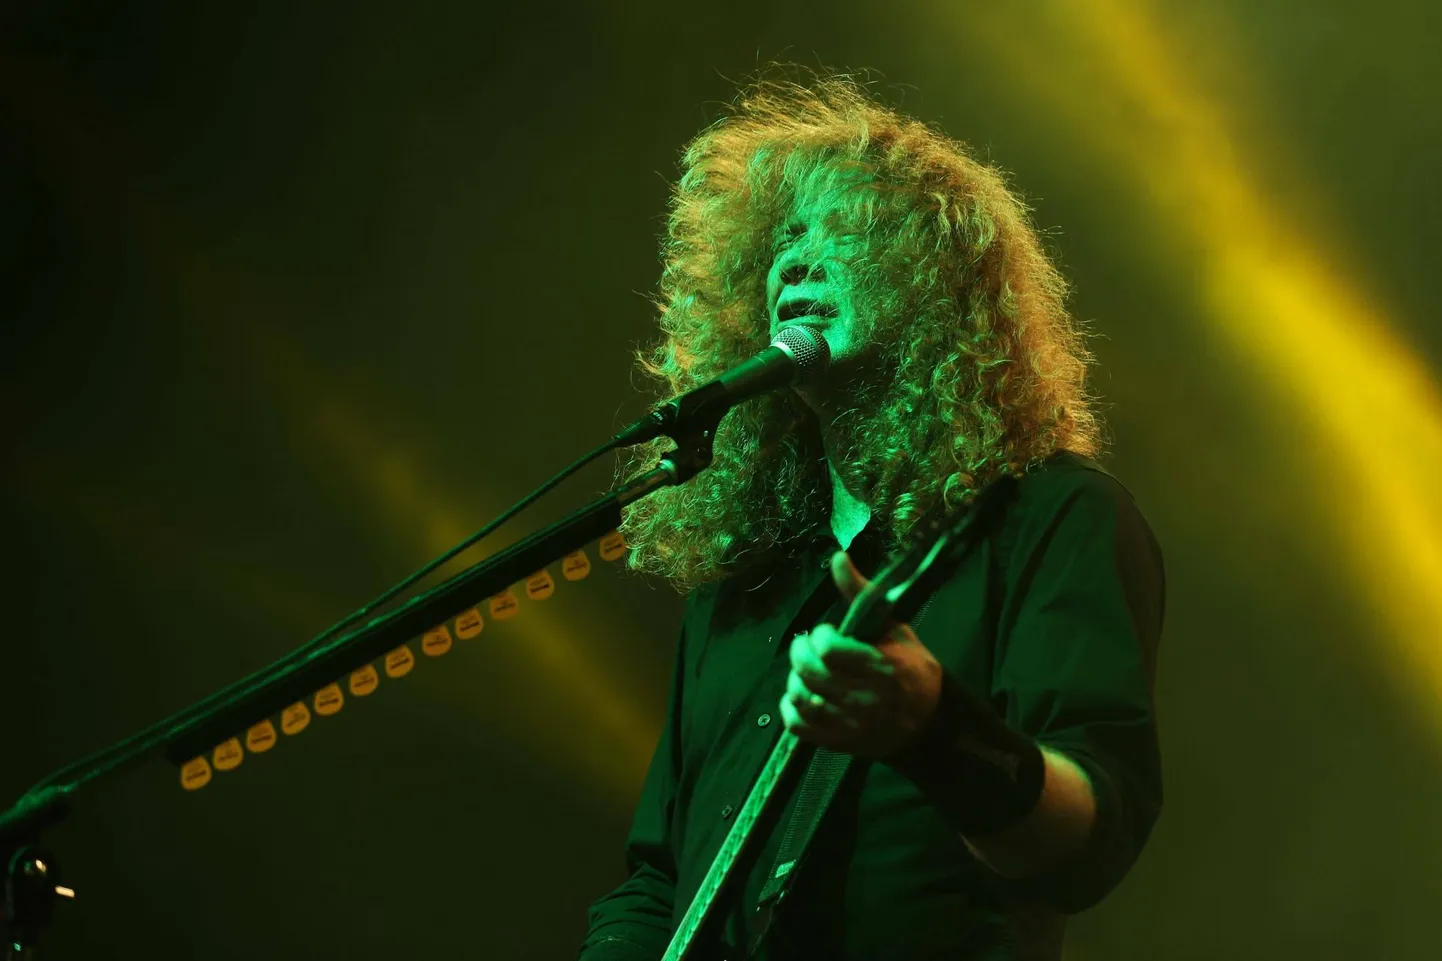 Dave Mustaine annab kuuma Megadethi kontserdil Rio de Janeiros. Juba homme teeb ta sedasama Tallinnas.